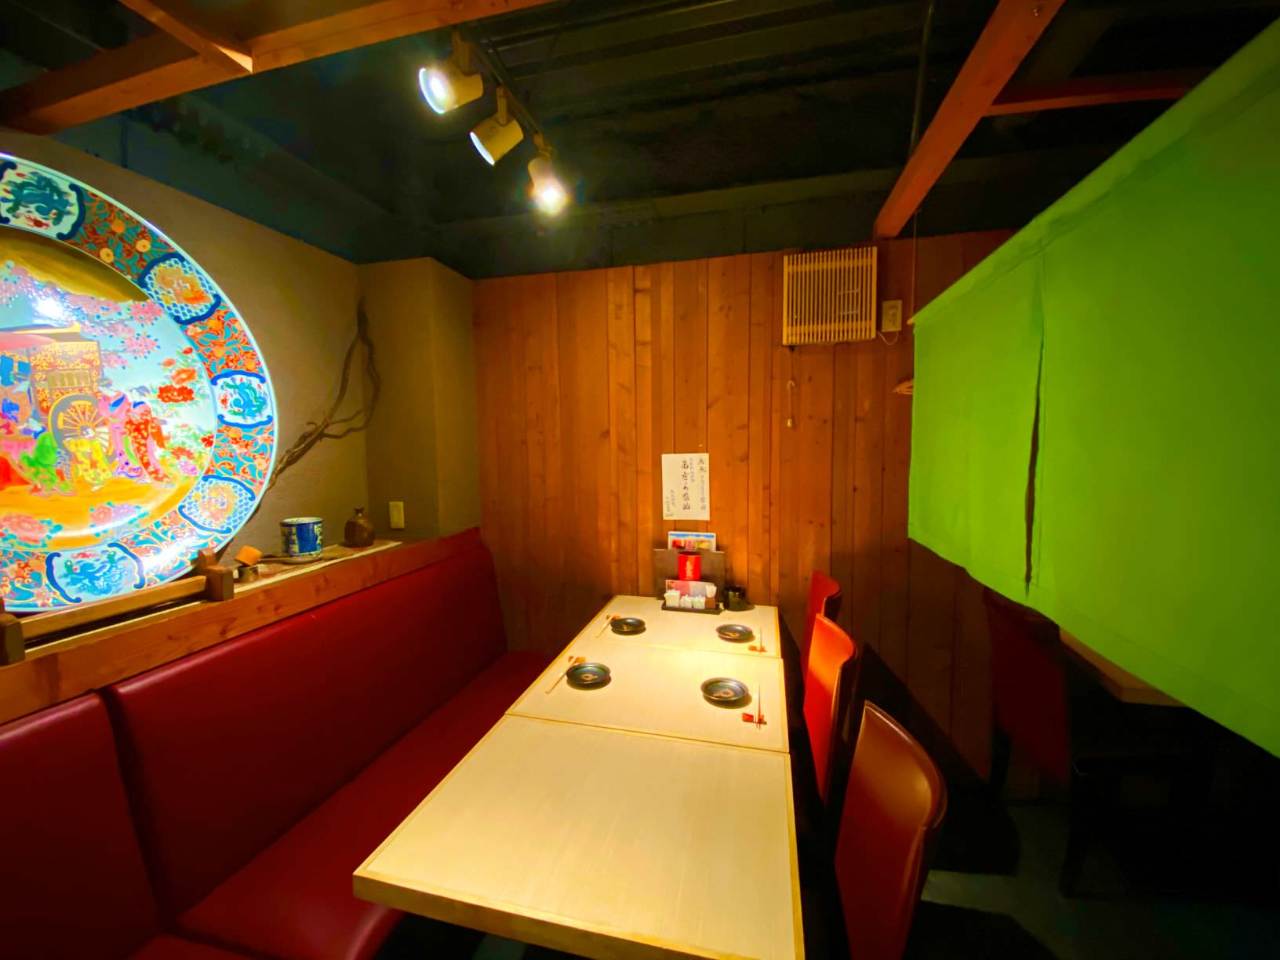 22年 最新グルメ 心斎橋にある個室でゆったり海鮮料理を味わえるお店 レストラン カフェ 居酒屋のネット予約 大阪版